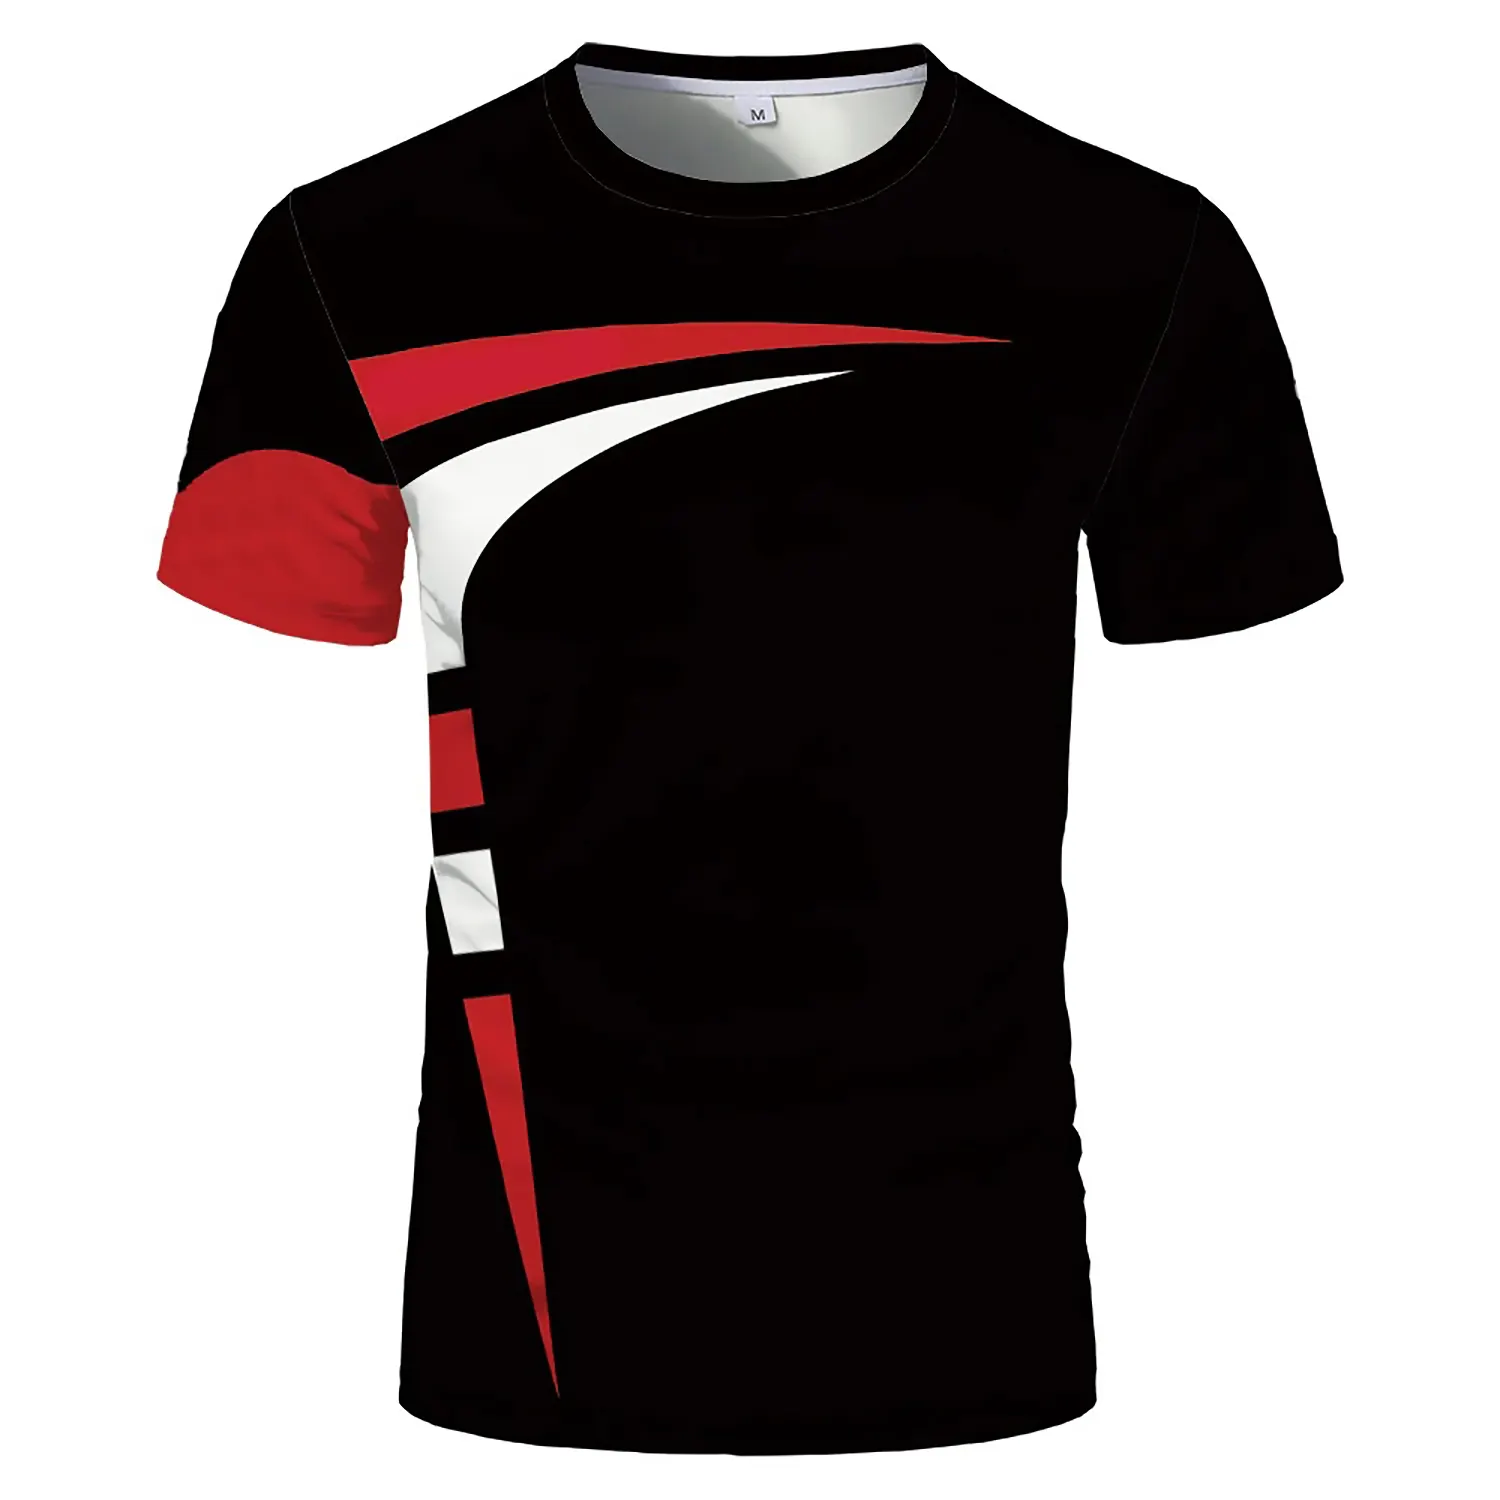 Özel baskı yeni tasarım toptan spor giyim eşofman takımları toptan fiyat % 100% pamuk en kaliteli erkek T-Shirt